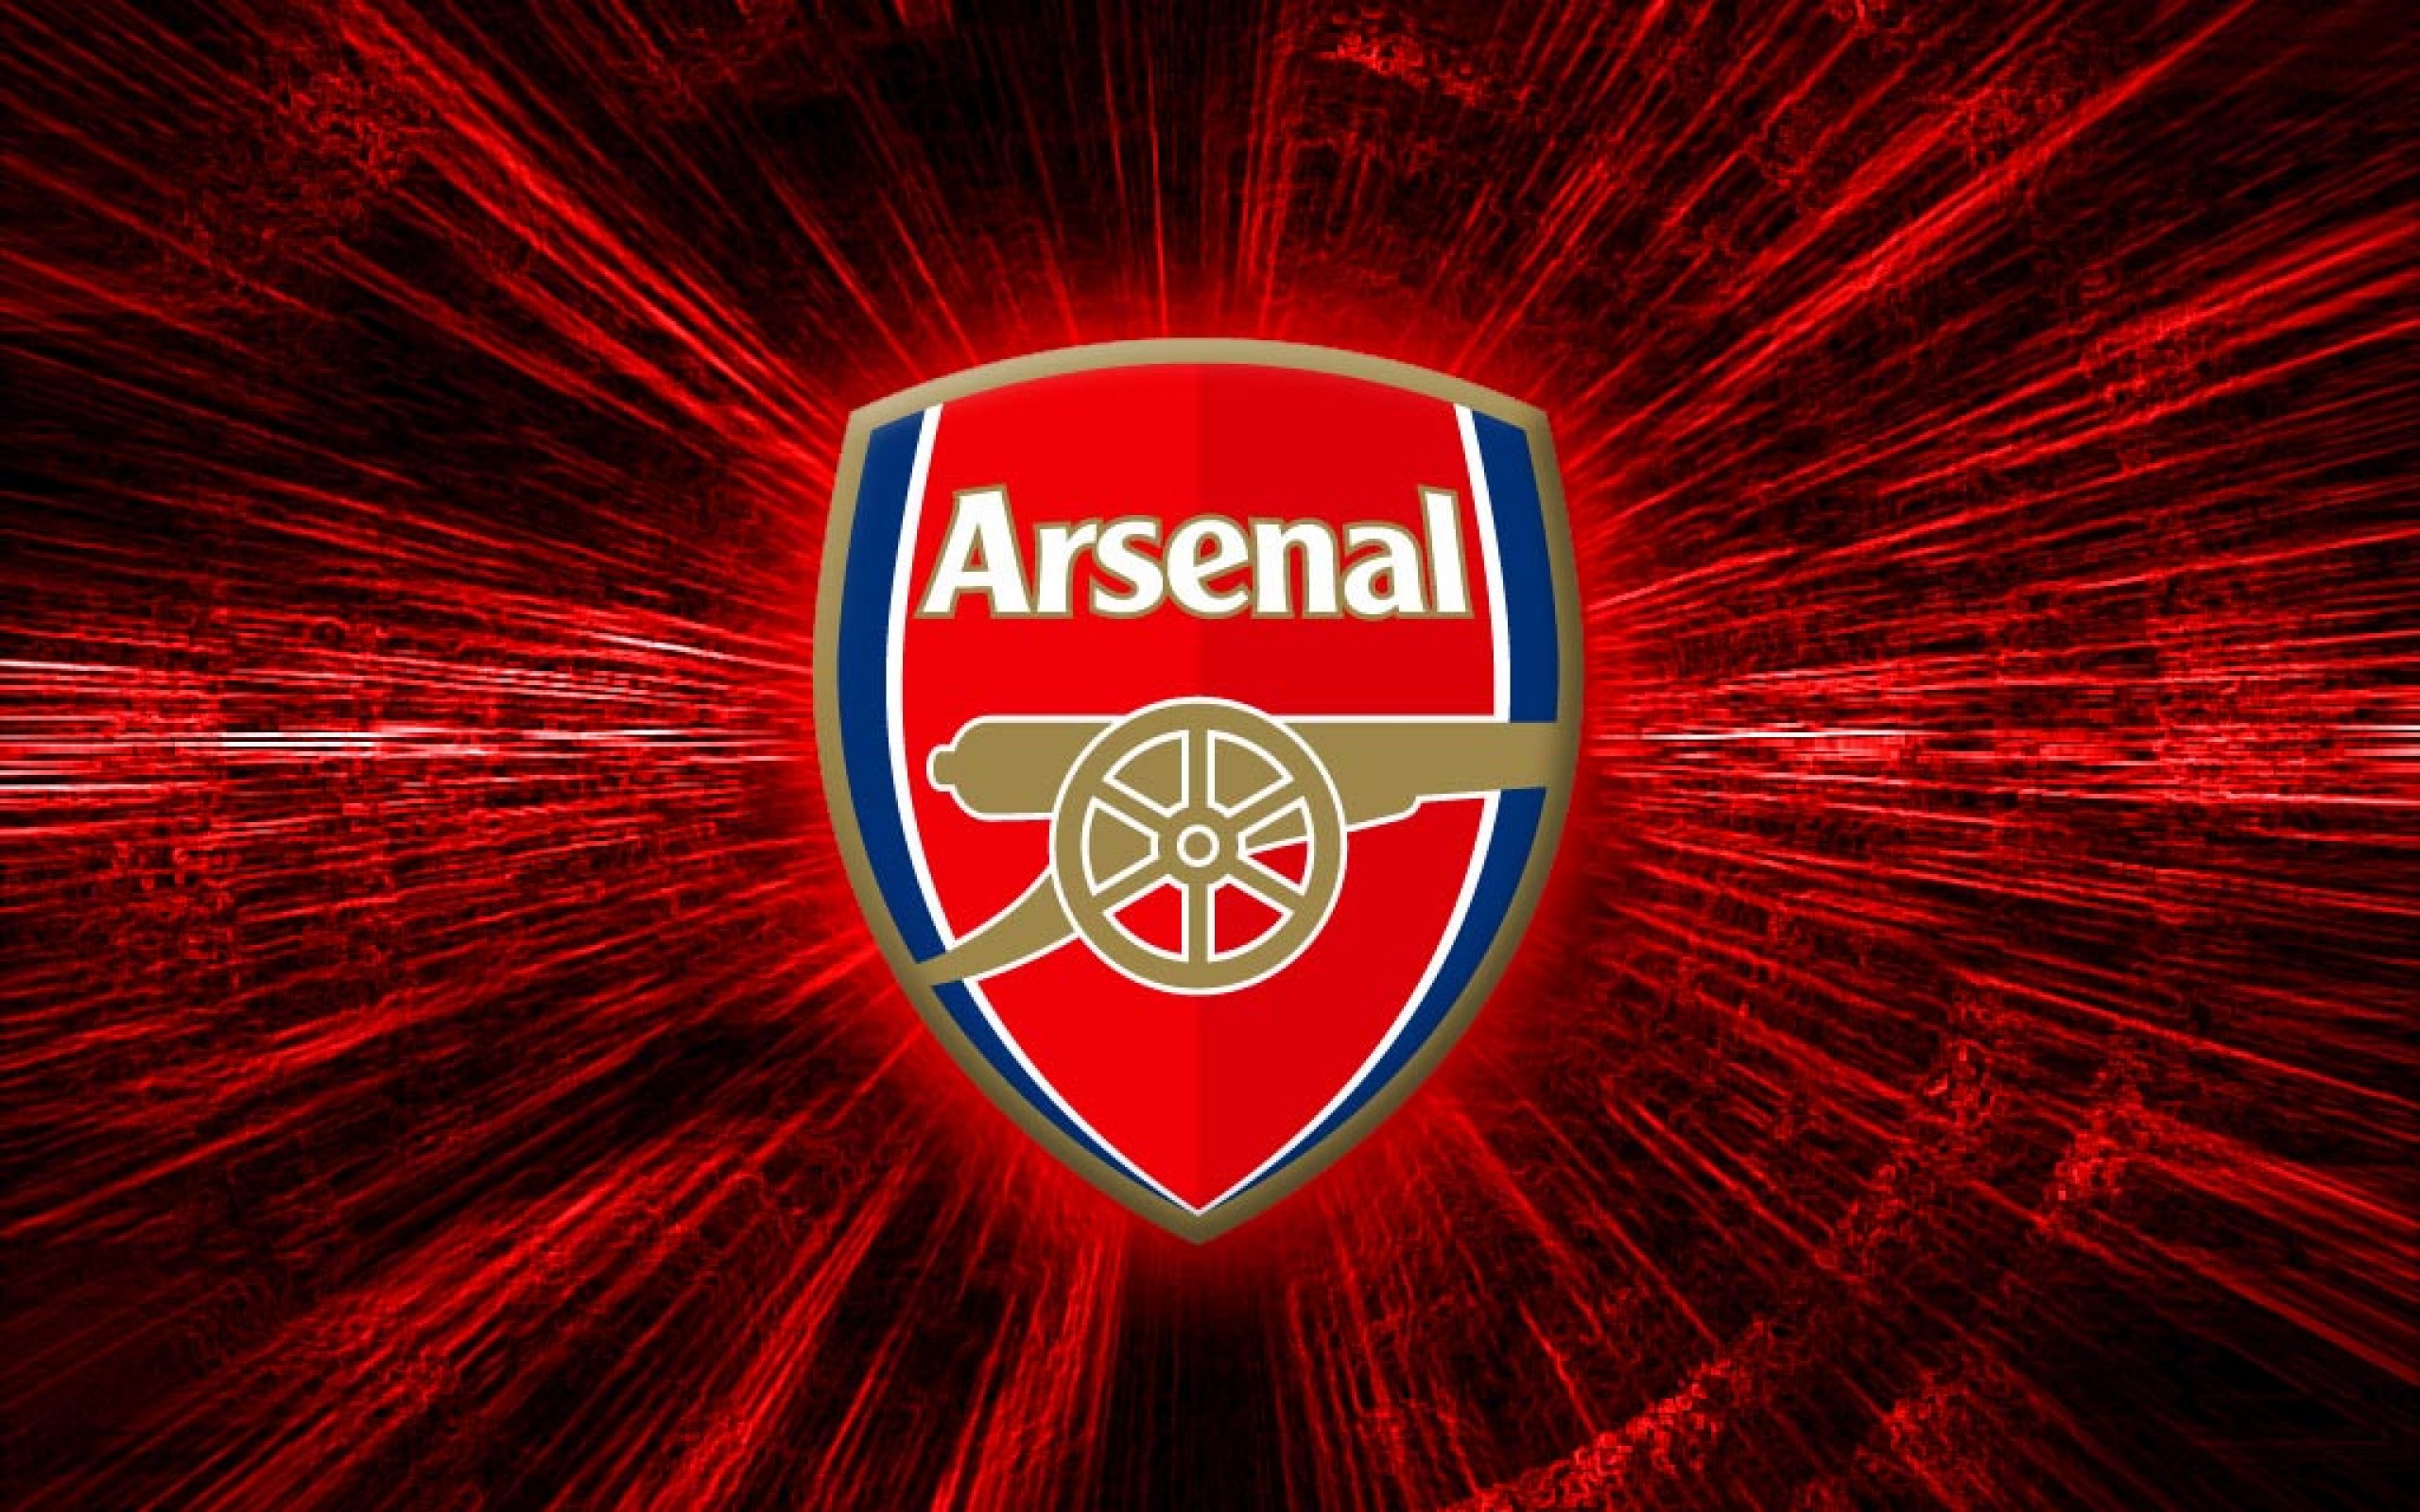 Free Arsenal desktop image Arsenal FC wallpapers 2560x1600